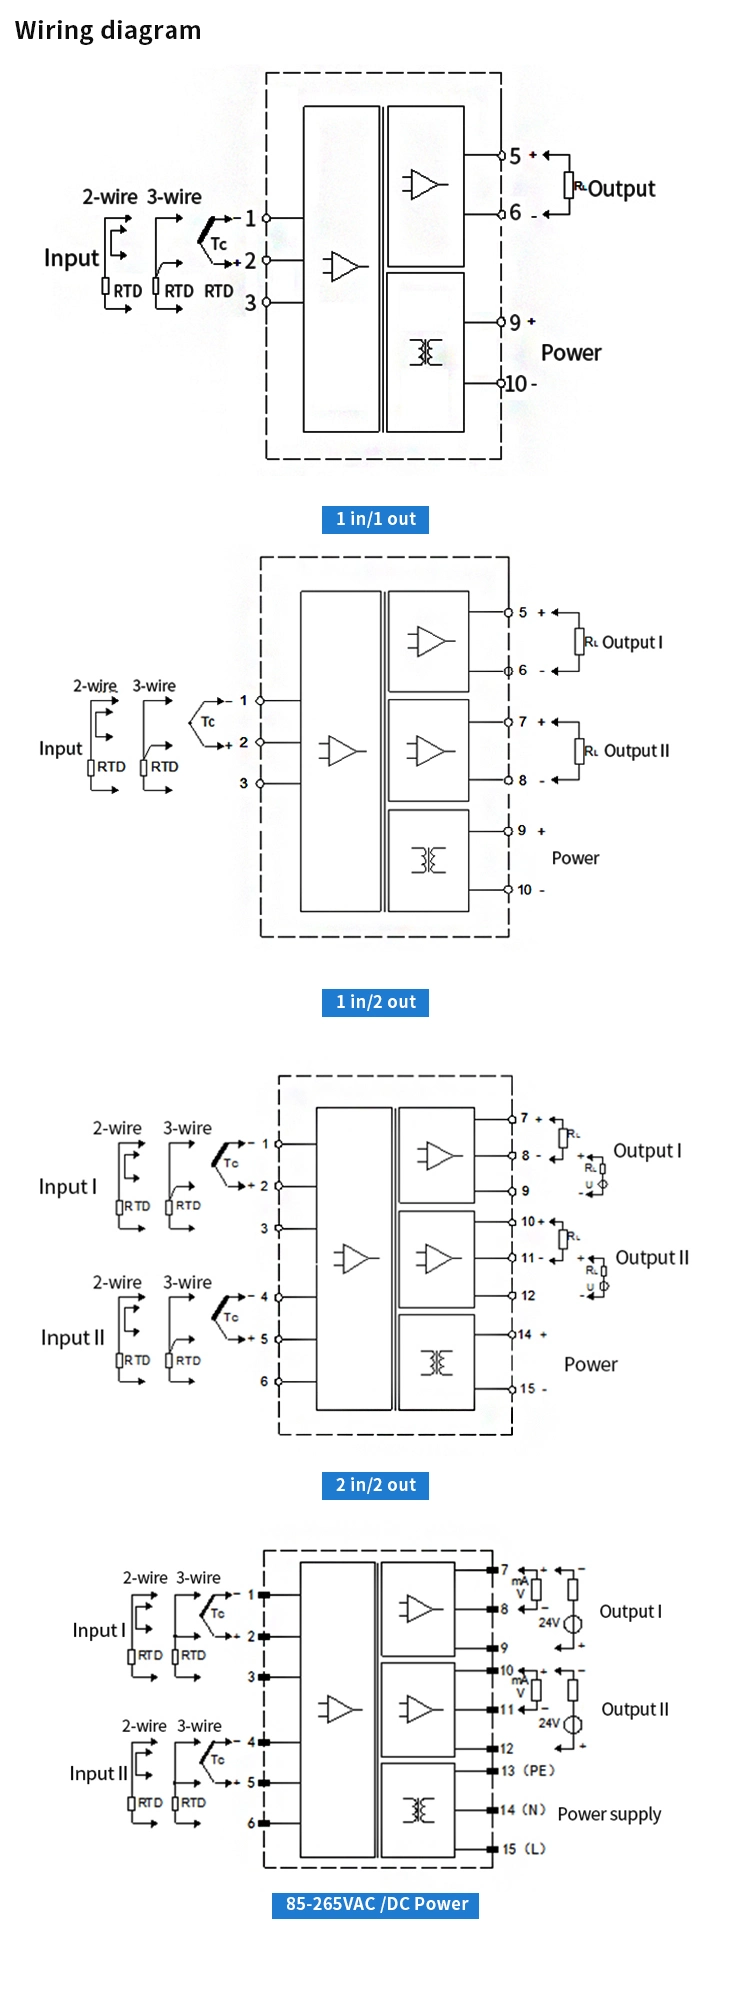 Loop Isolator Current Temperature Isolator Temperature Signal Converter PT100 to 4-20mA